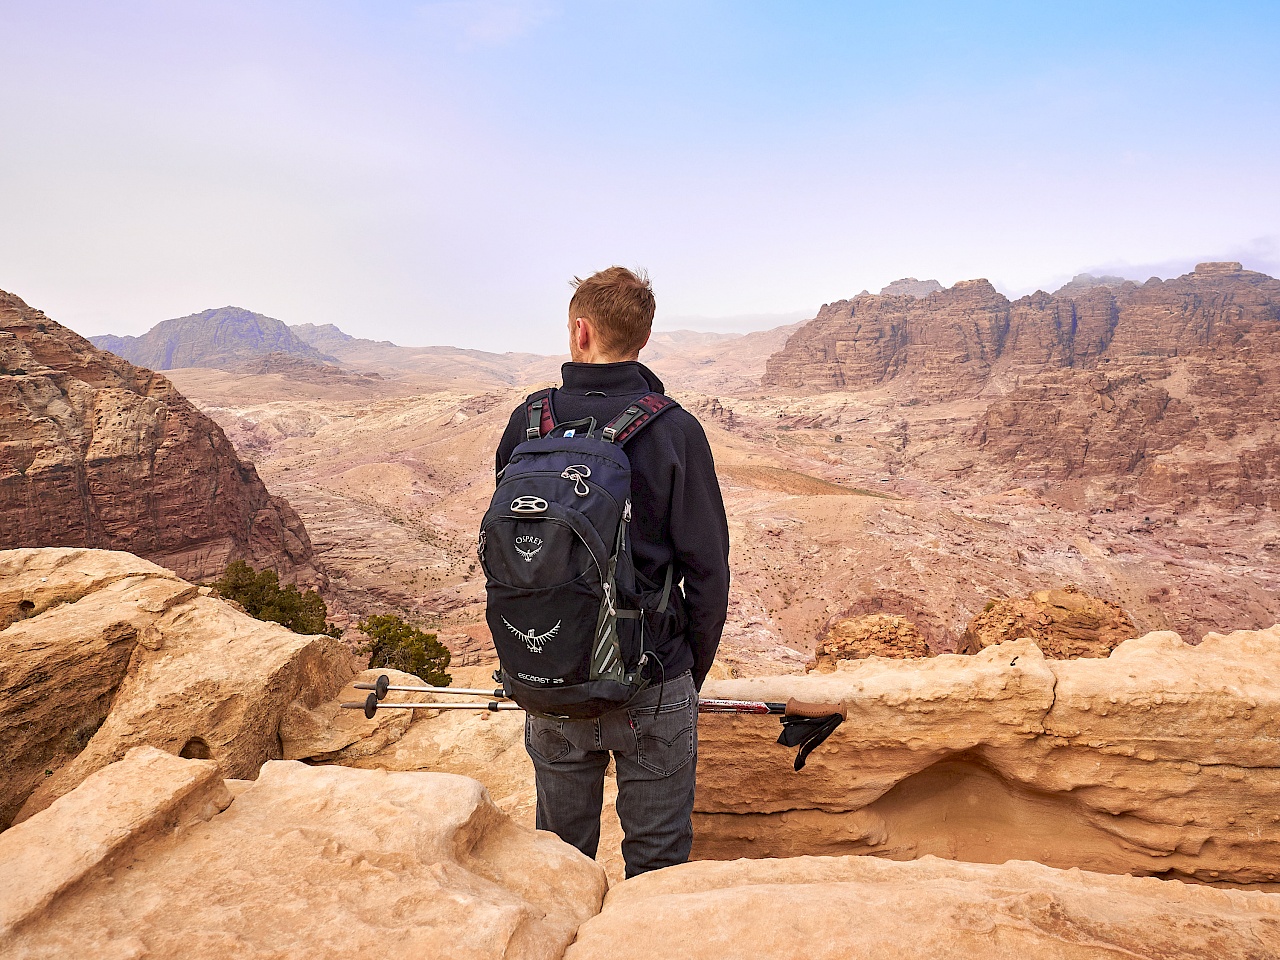 Aussicht vom Opferplatz in Petra (Jordanien)